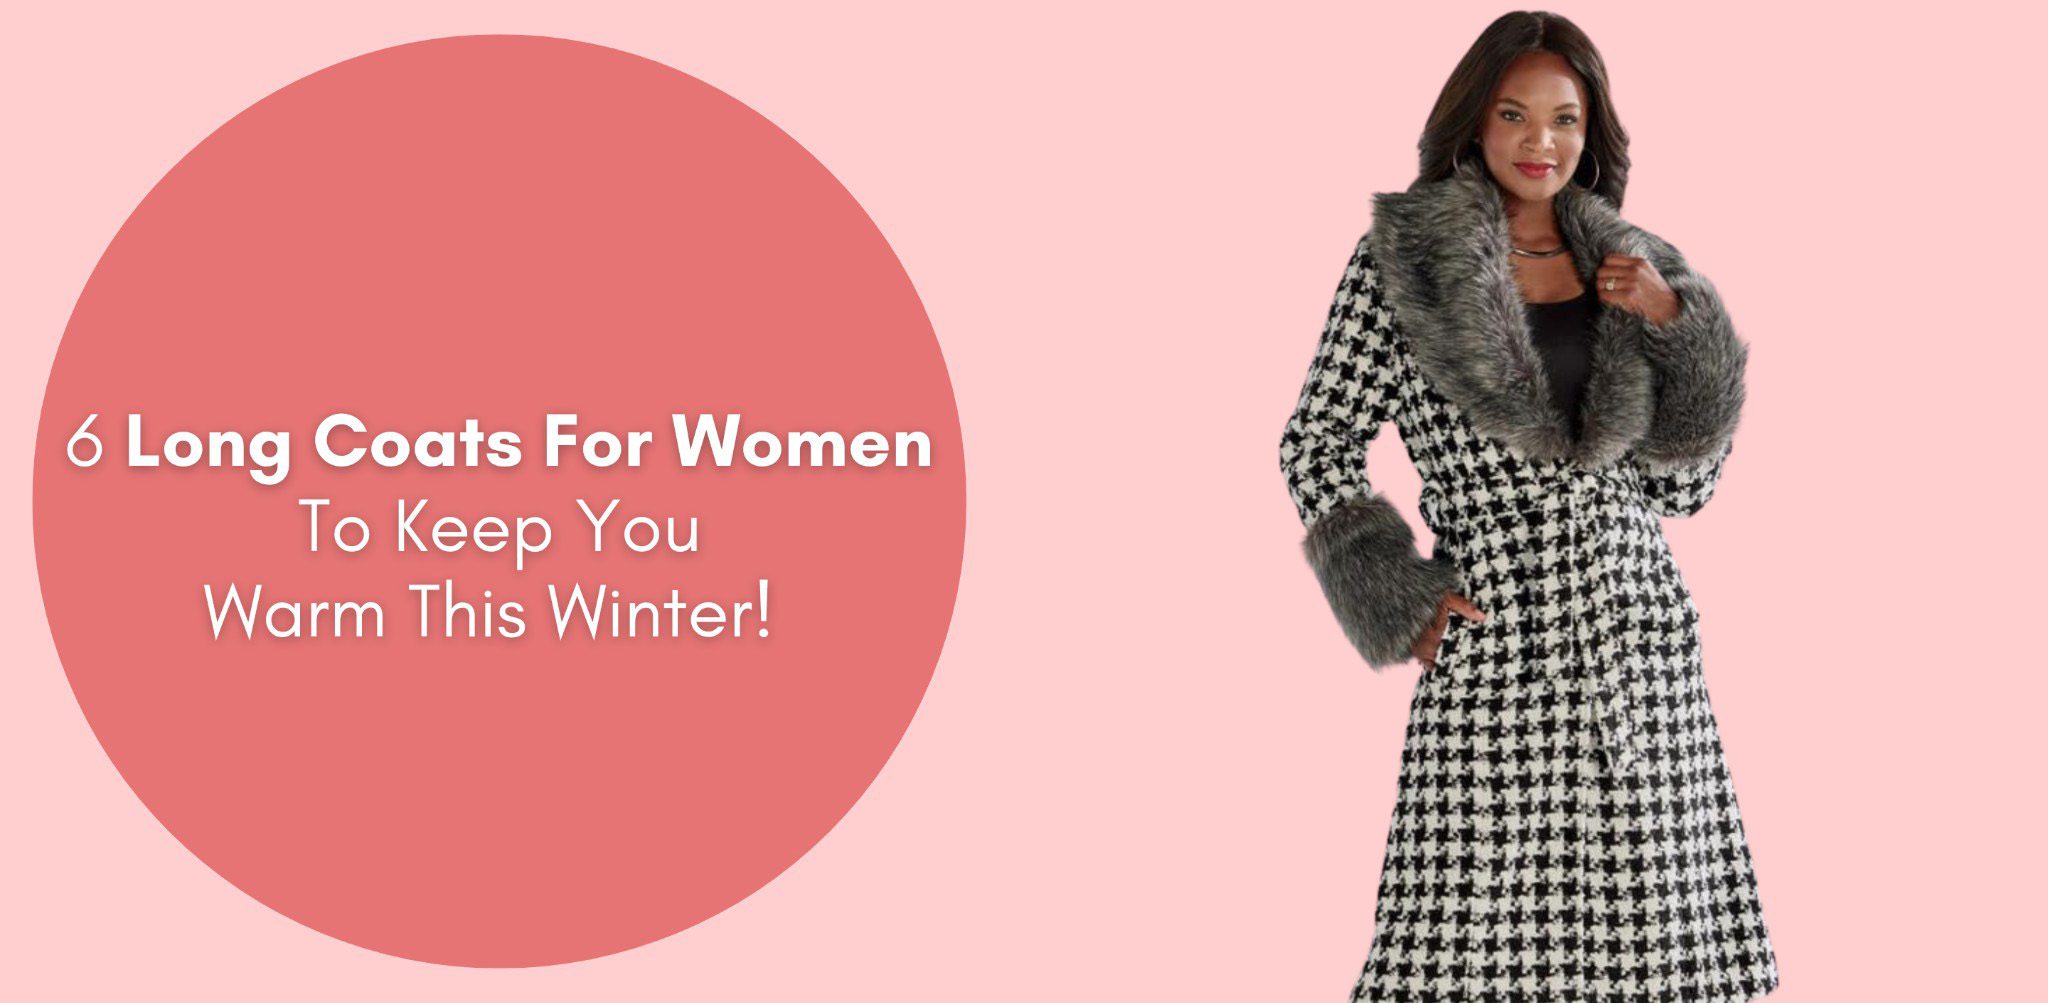 6 long coats for women to keep you warm